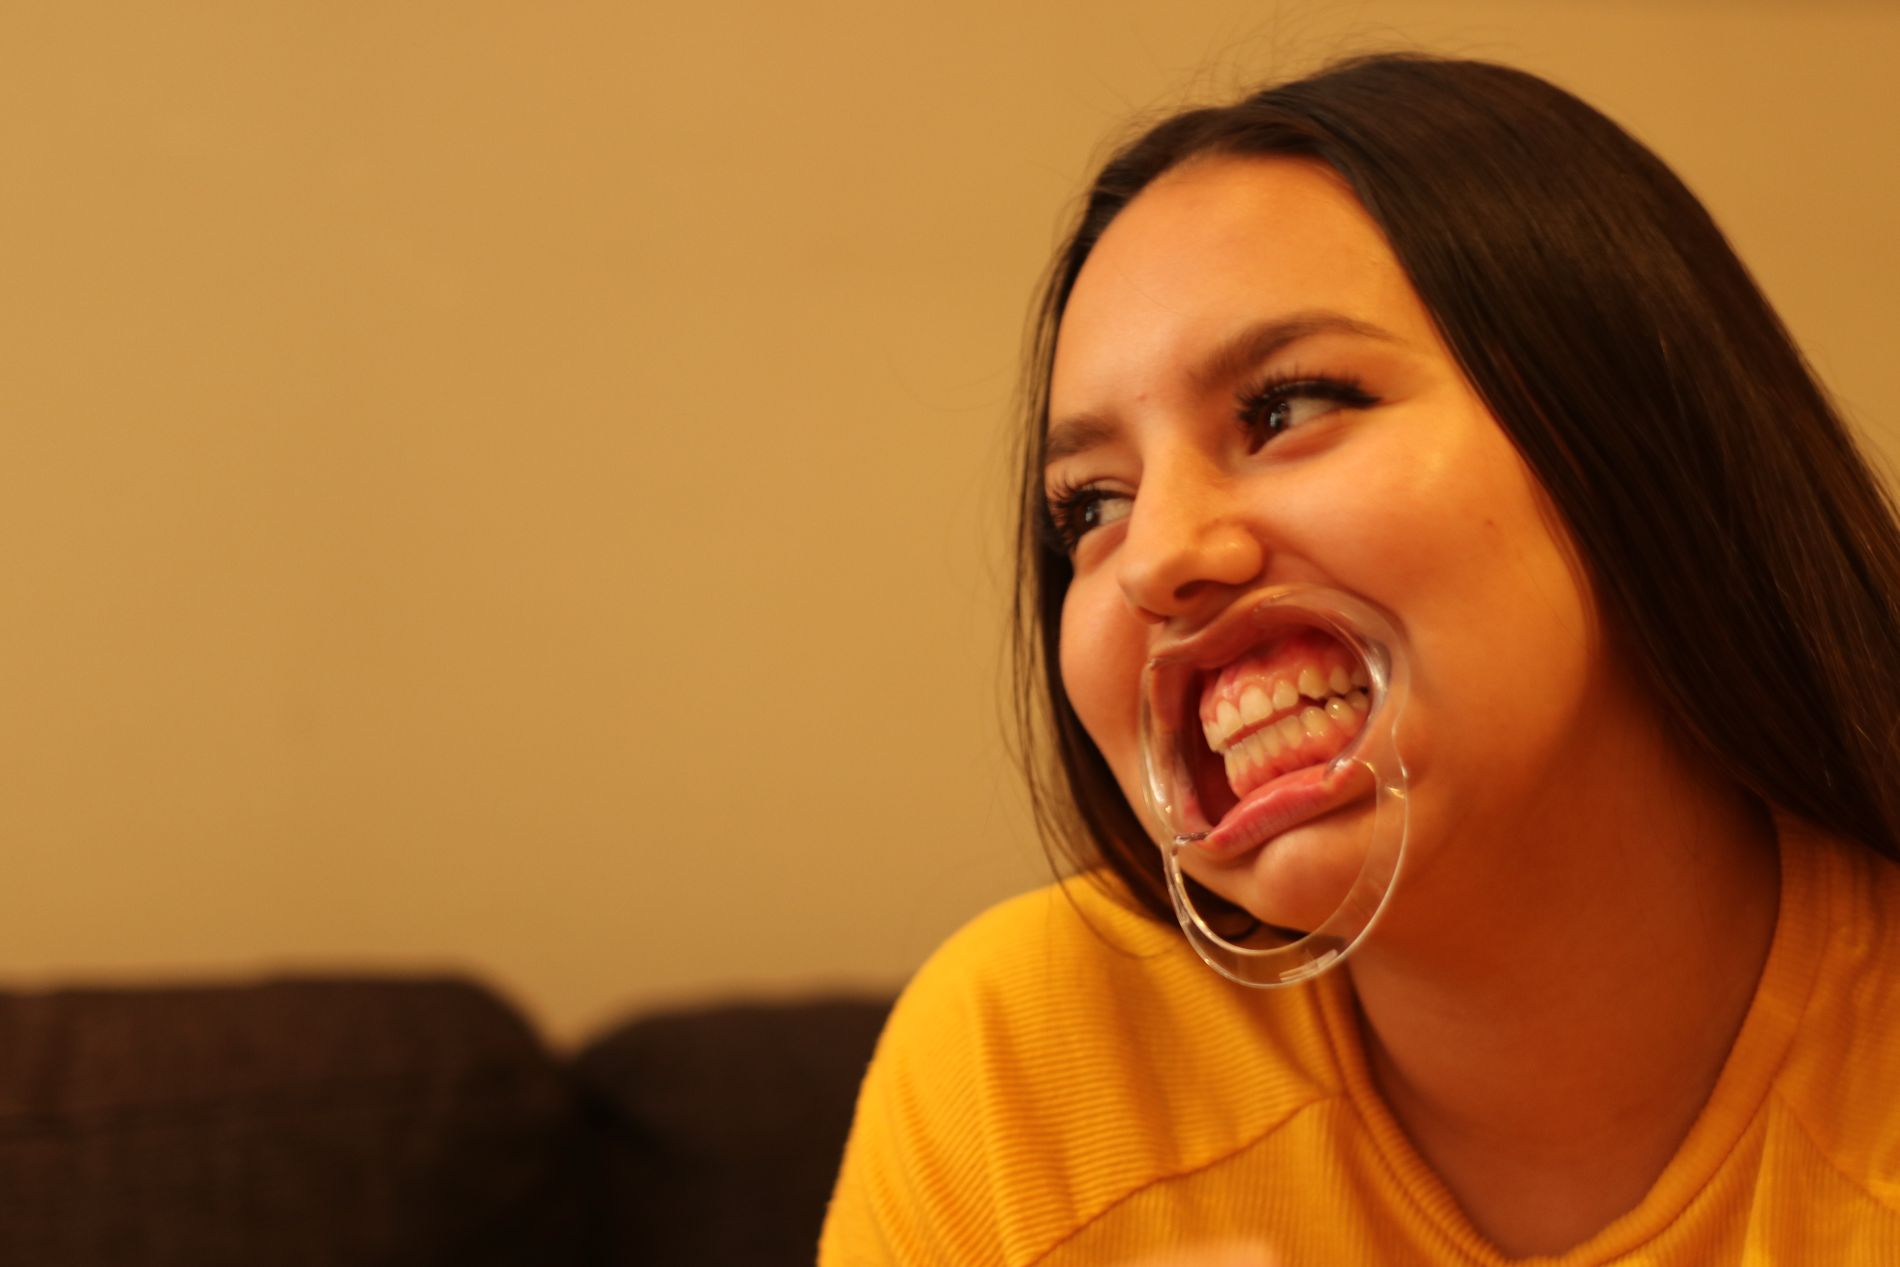 HELSPRØTT: Det er nesten umulig å gjøre seg forstått med en plastdings i munnen. Natalie gjør så godt hun kan.